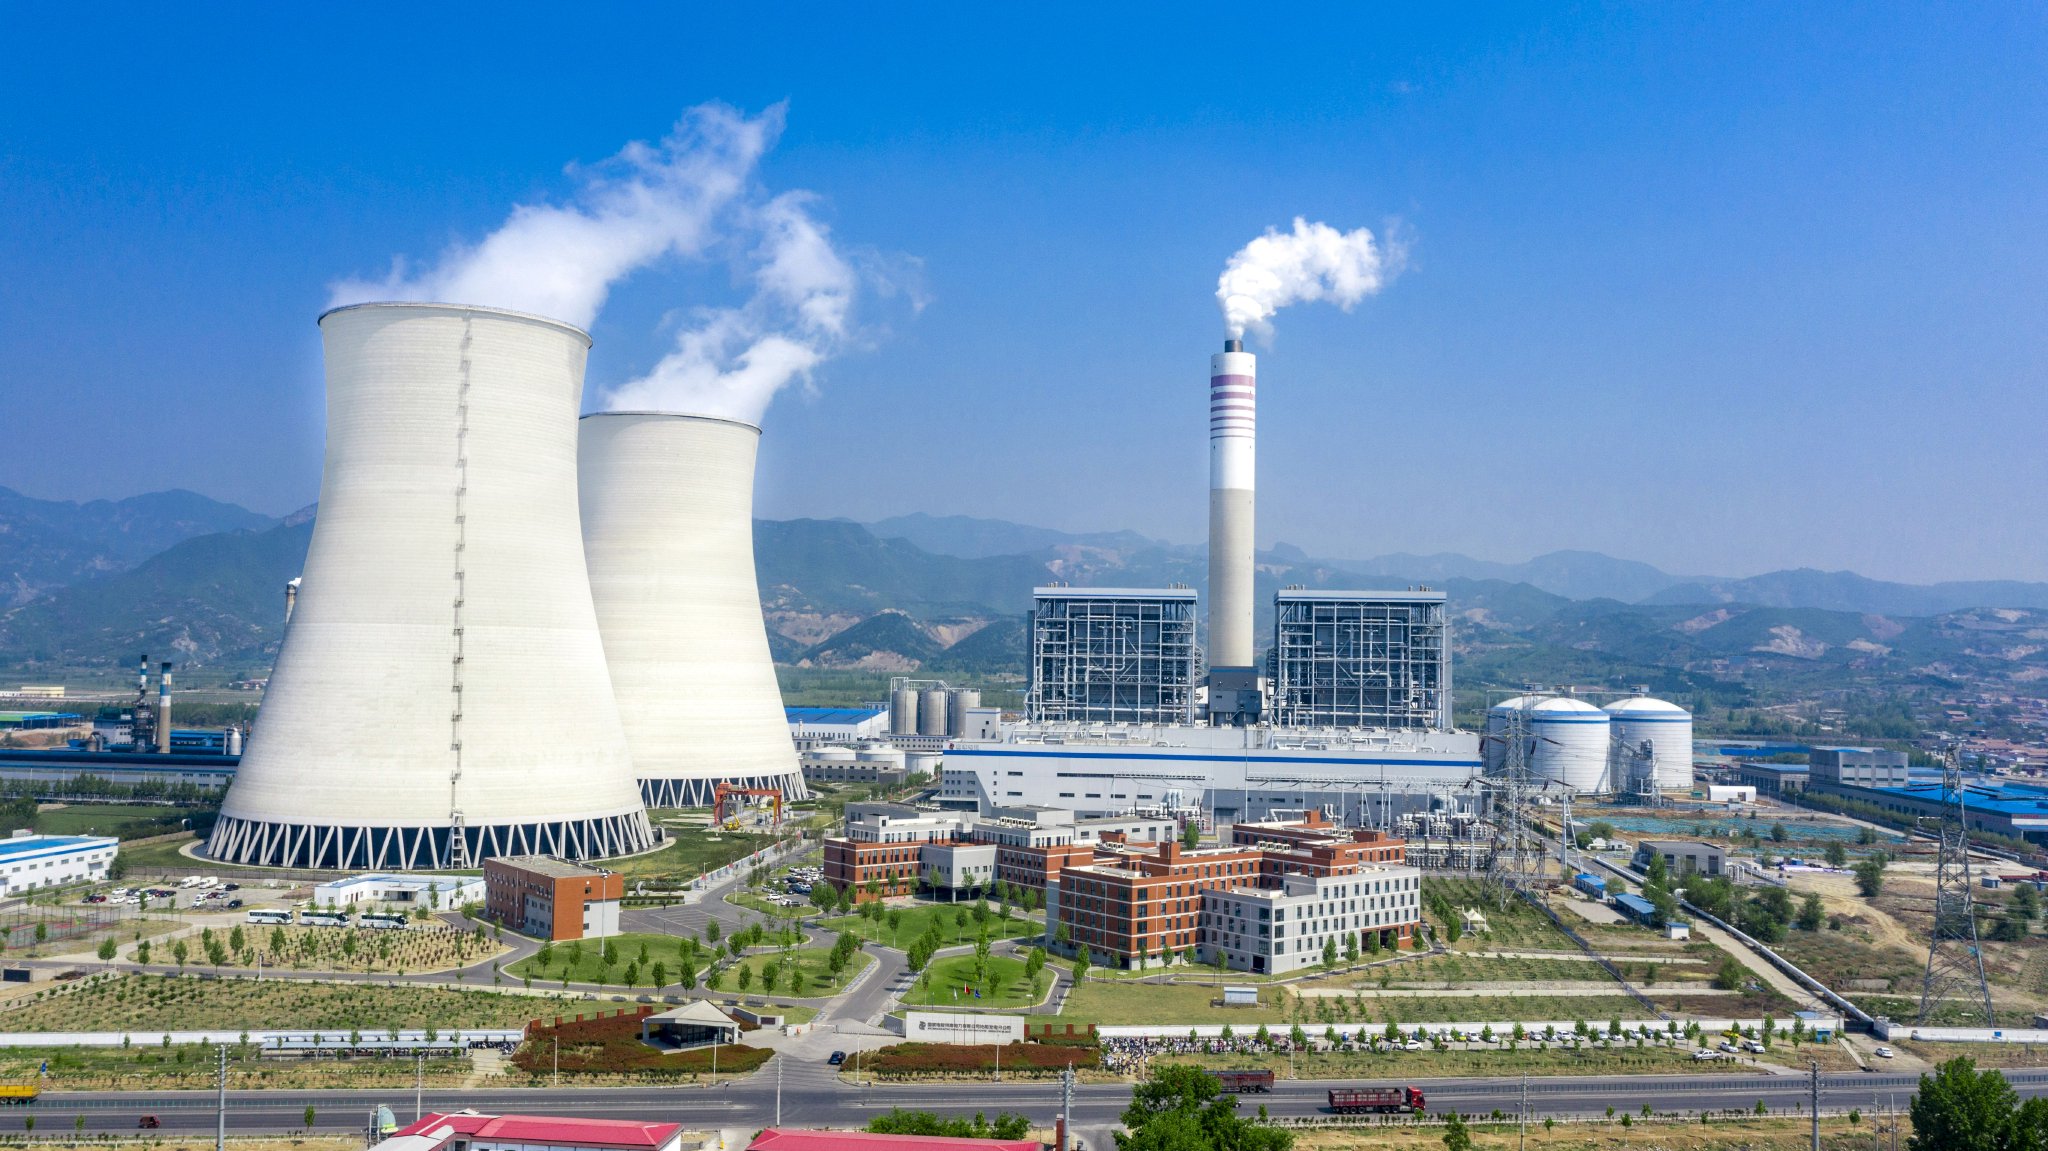 国家电投集团河南电力有限公司投资兴建的热力发电项目。 受访者供图